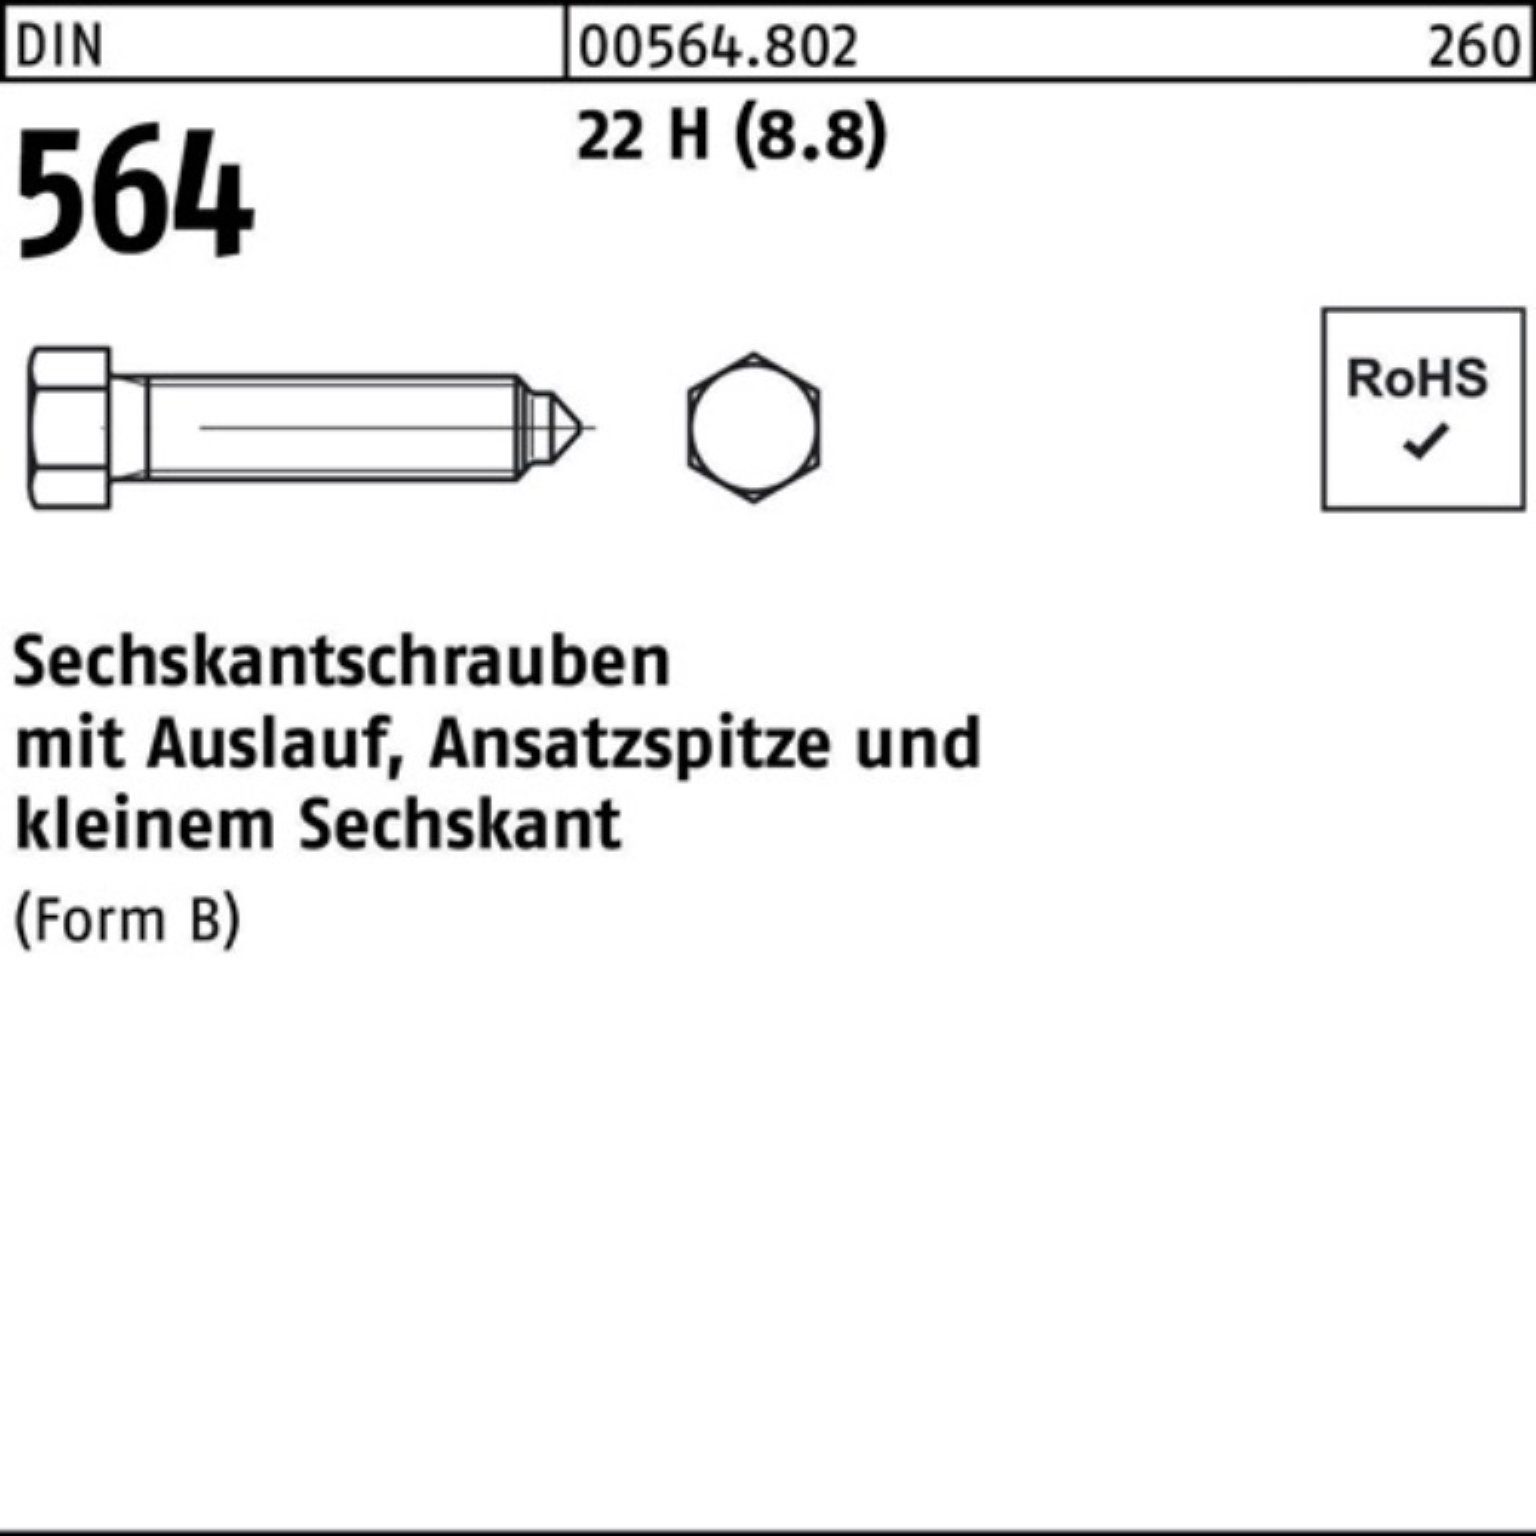 Reyher Sechskantschraube 100er Pack Sechskantschraube DIN 564 Ansatzspitze/Auslauf BM 12x 30 22